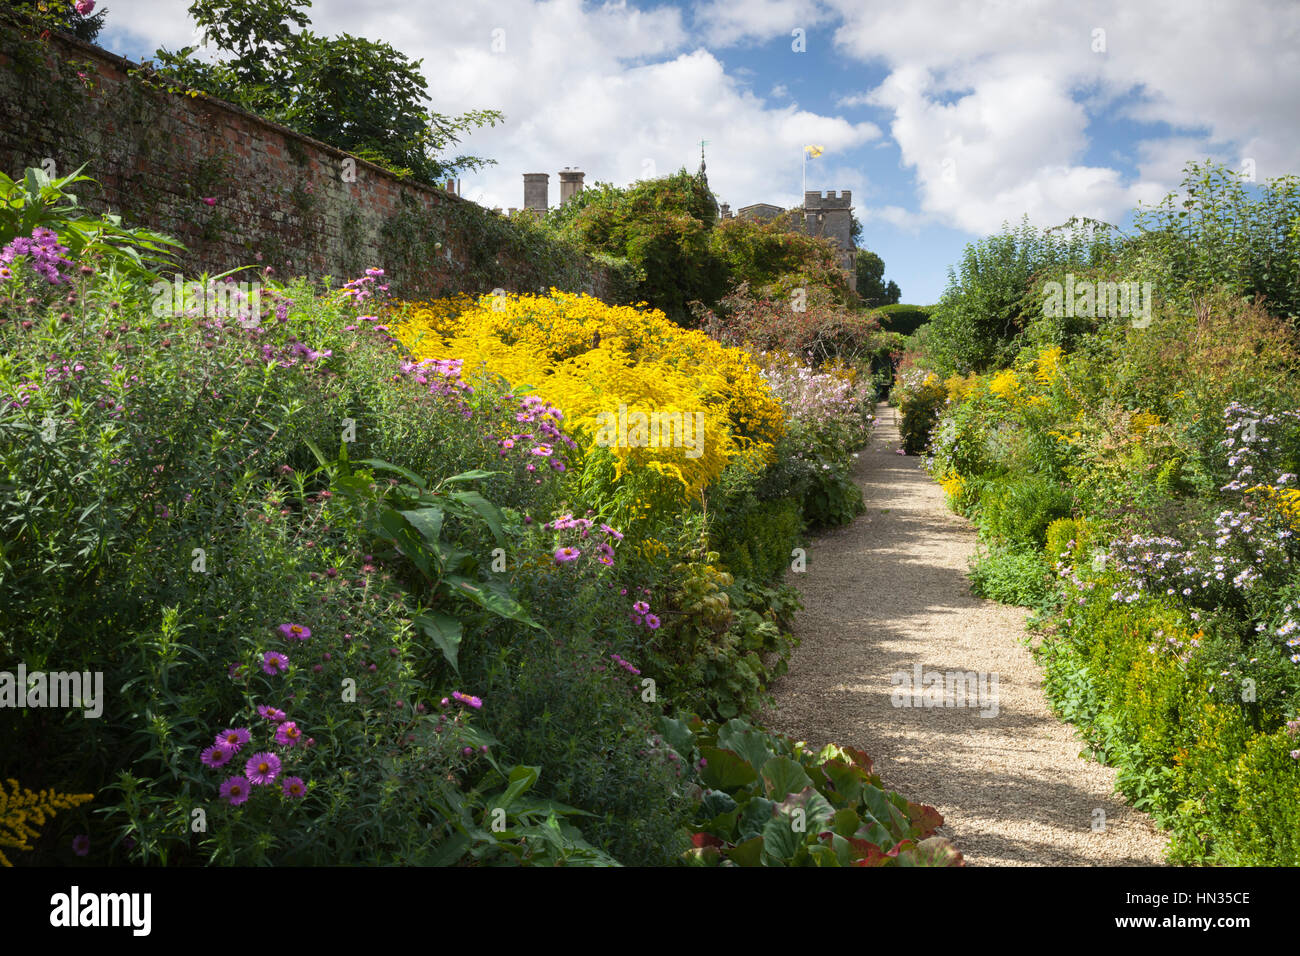 El colorido de las fronteras finales de verano en el jardín amurallado de Rousham Casa en Oxfordshire. Foto de stock